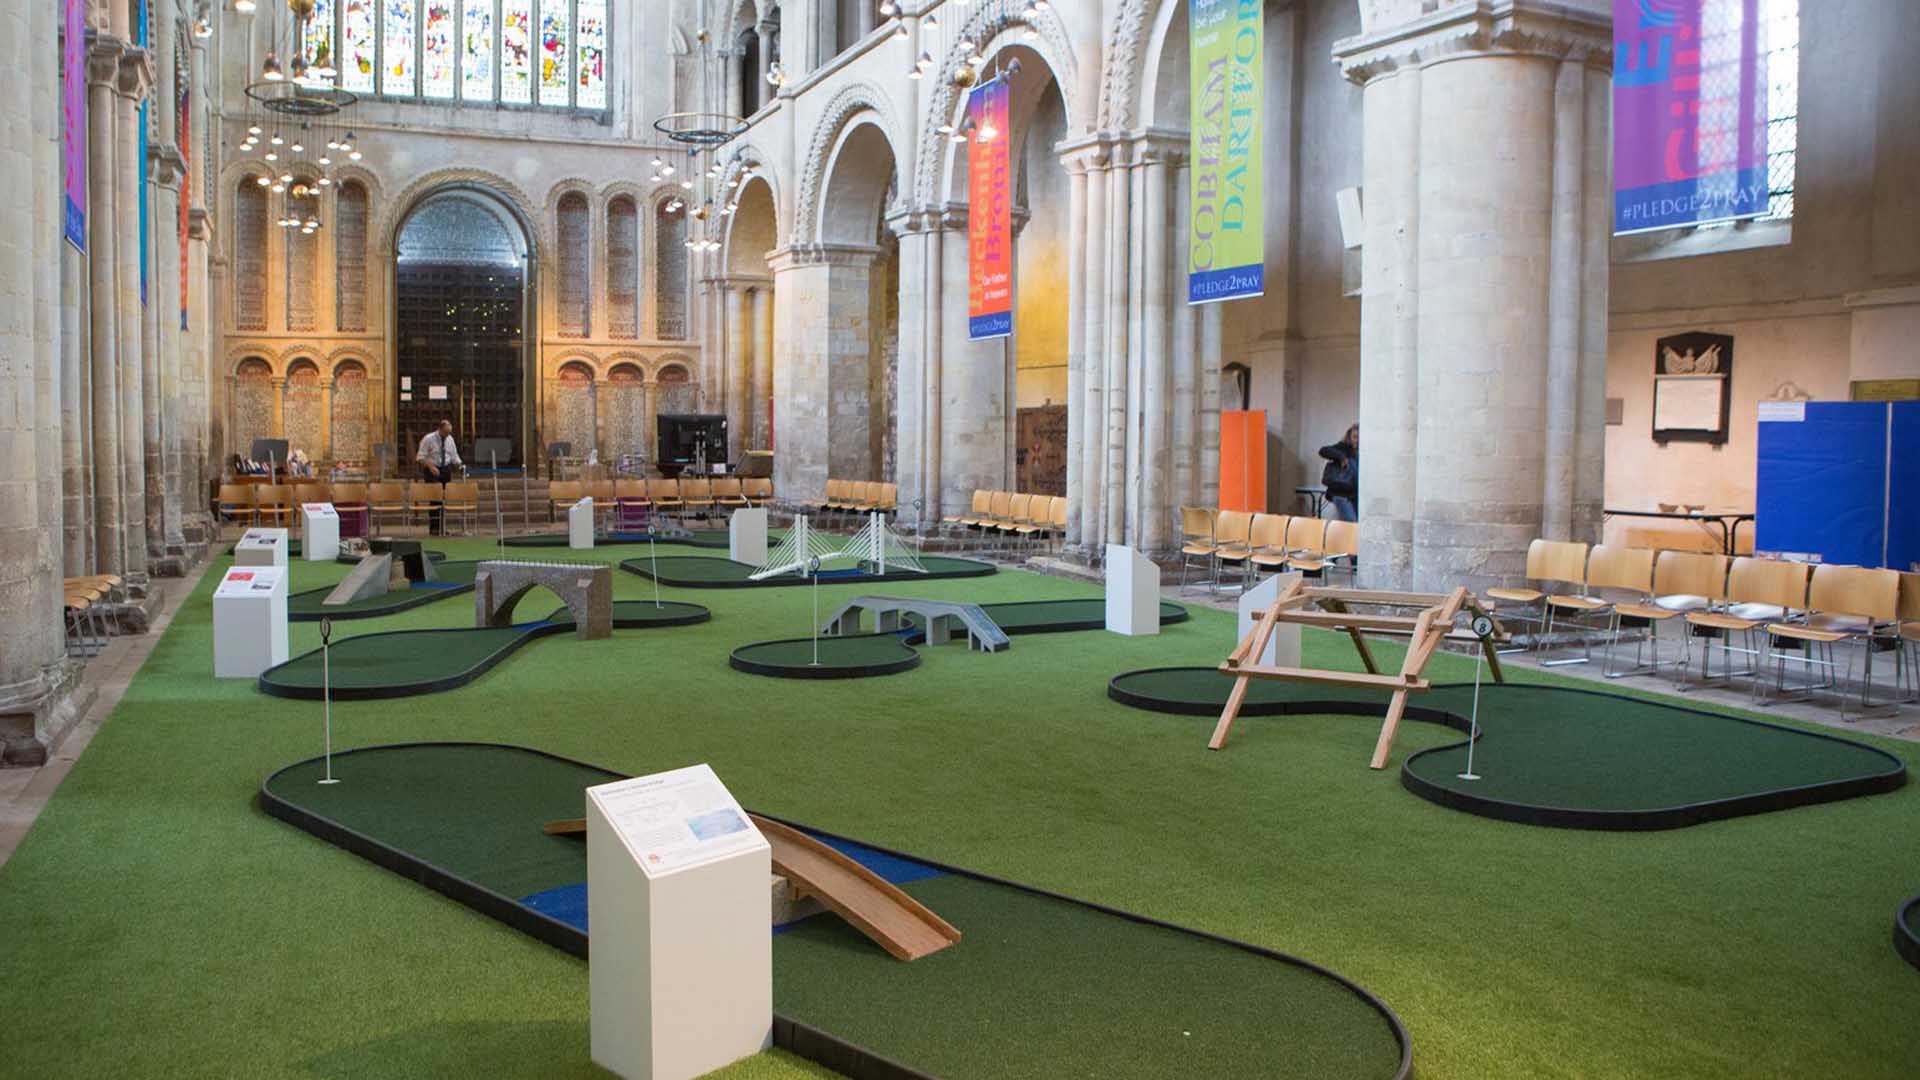 Una catedral británica instala un minigolf para atraer fieles